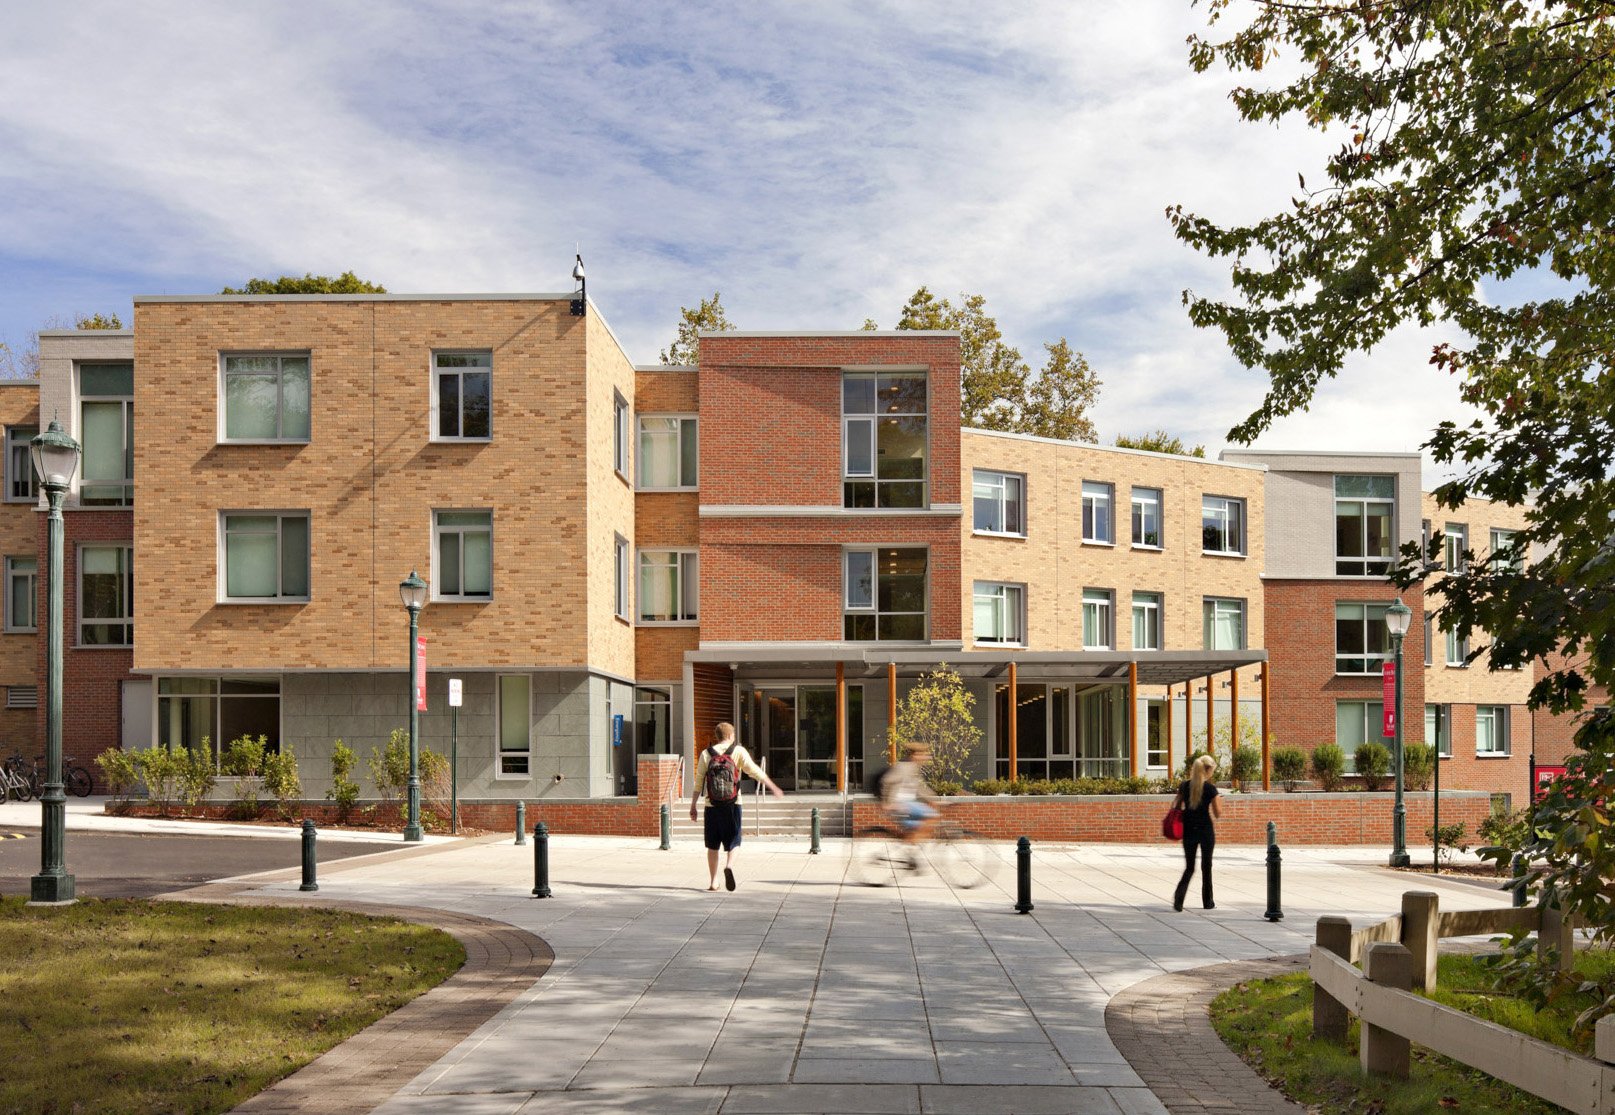 Fairfield University / New Village Apartments